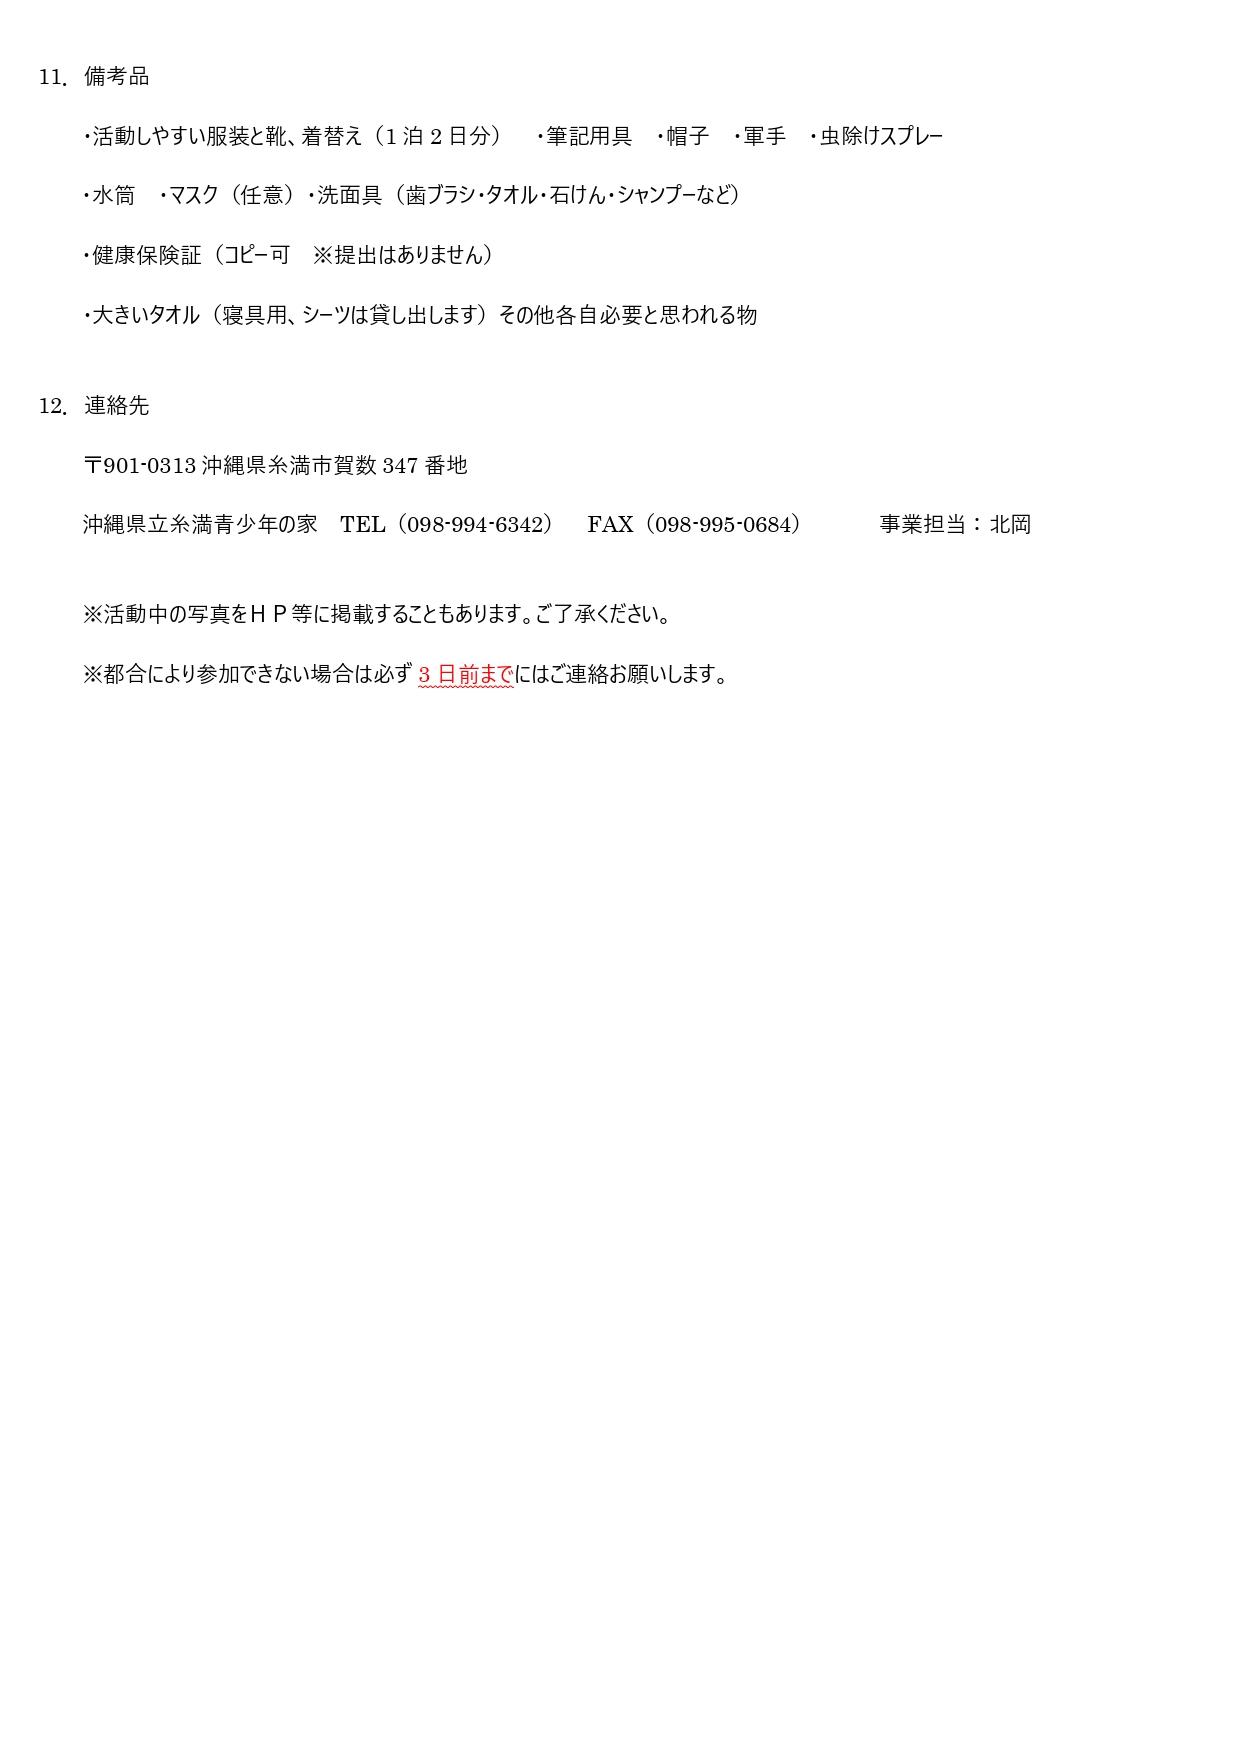 ファミリーキャンプ実施要項 - 06 (1)_page-0002.jpg